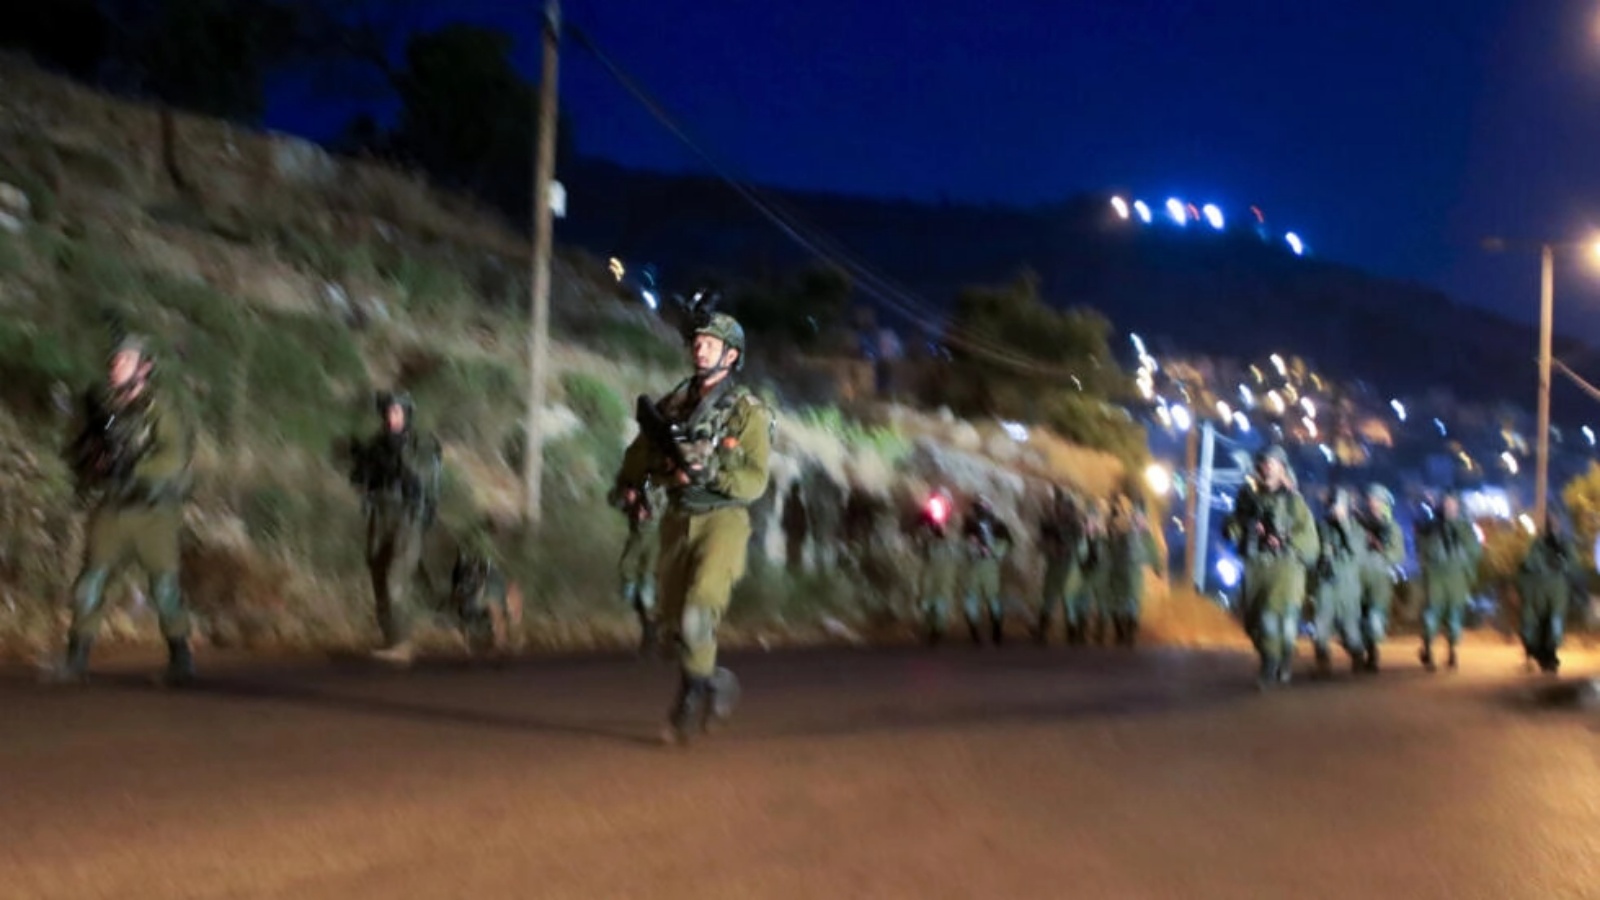 جنود إسرائيليون يغادرون بعد عملية في مخيم بلاطة قرب نابلس بالضفة الغربية المحتلة، في ساعة مبكرة الإثنين 22 مايو 2023